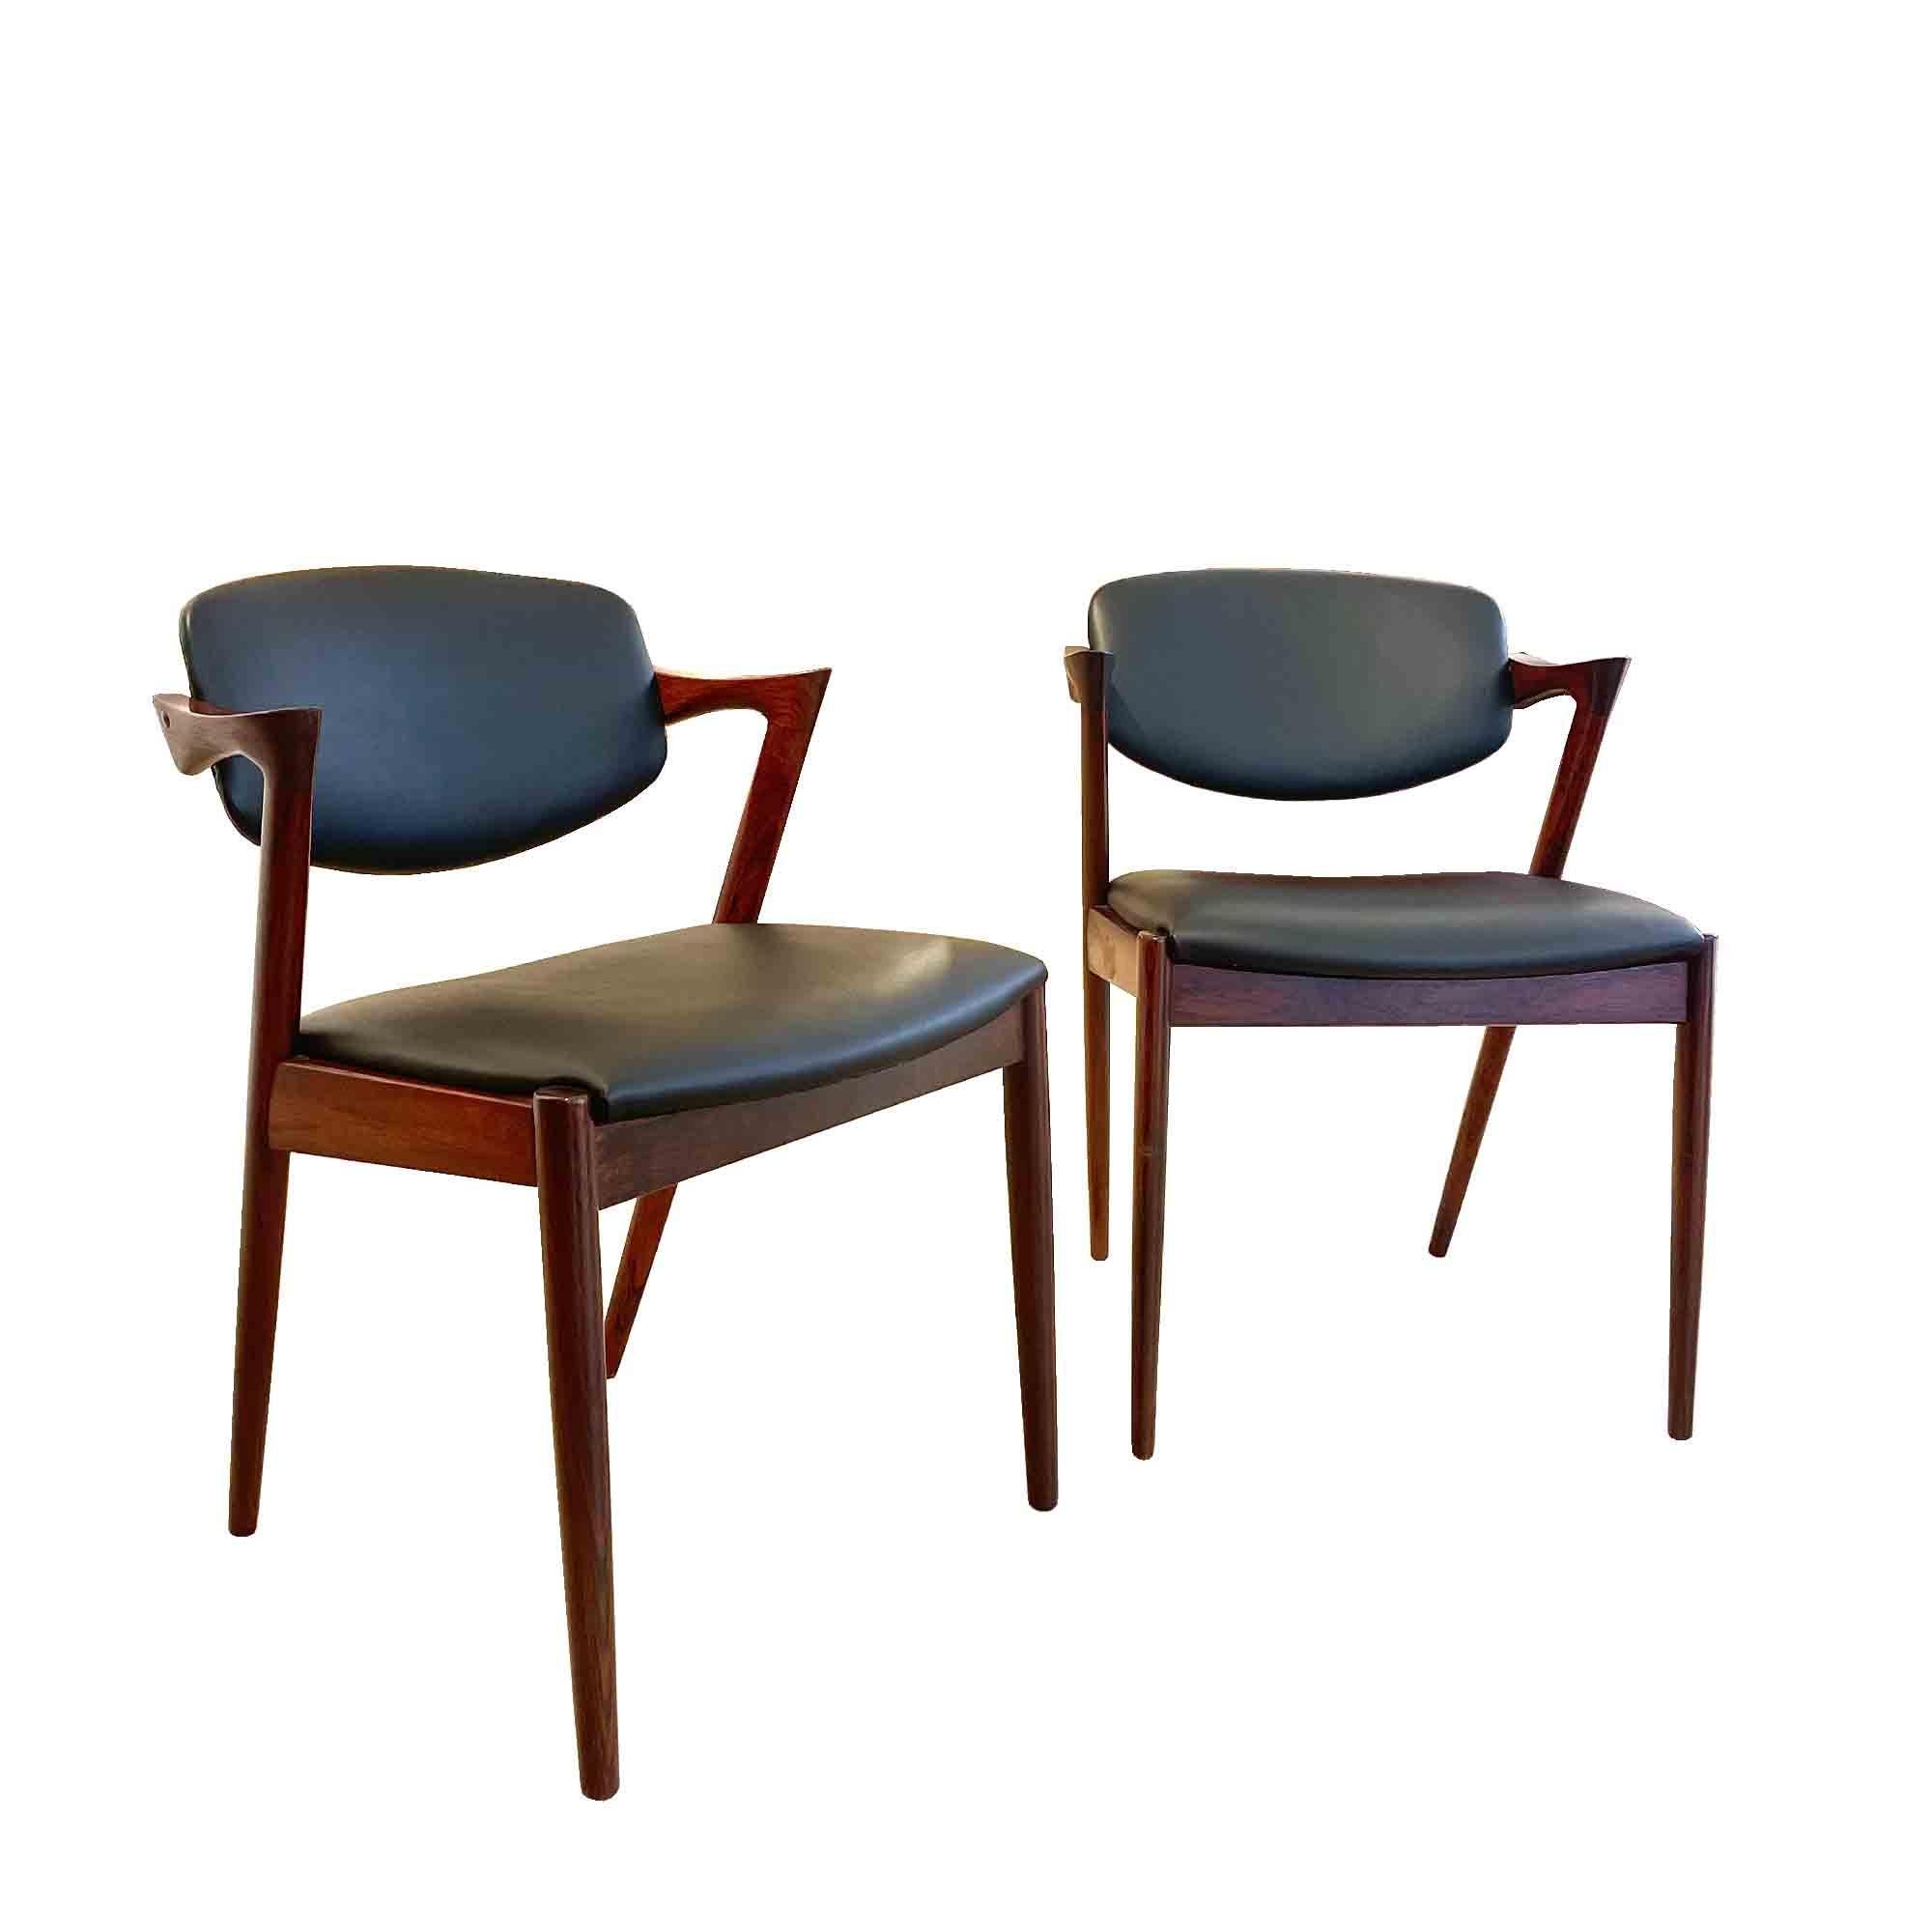 Zartheit und Eleganz charakterisieren Kristiansens modernistisches Design am besten. 1956 entwarf er sein berühmtestes Produkt, den Stuhl Nr. 42 für Schou Andersen. Die elegant geschwungene Rückenlehne und die schön gedrechselten Armlehnen schaffen